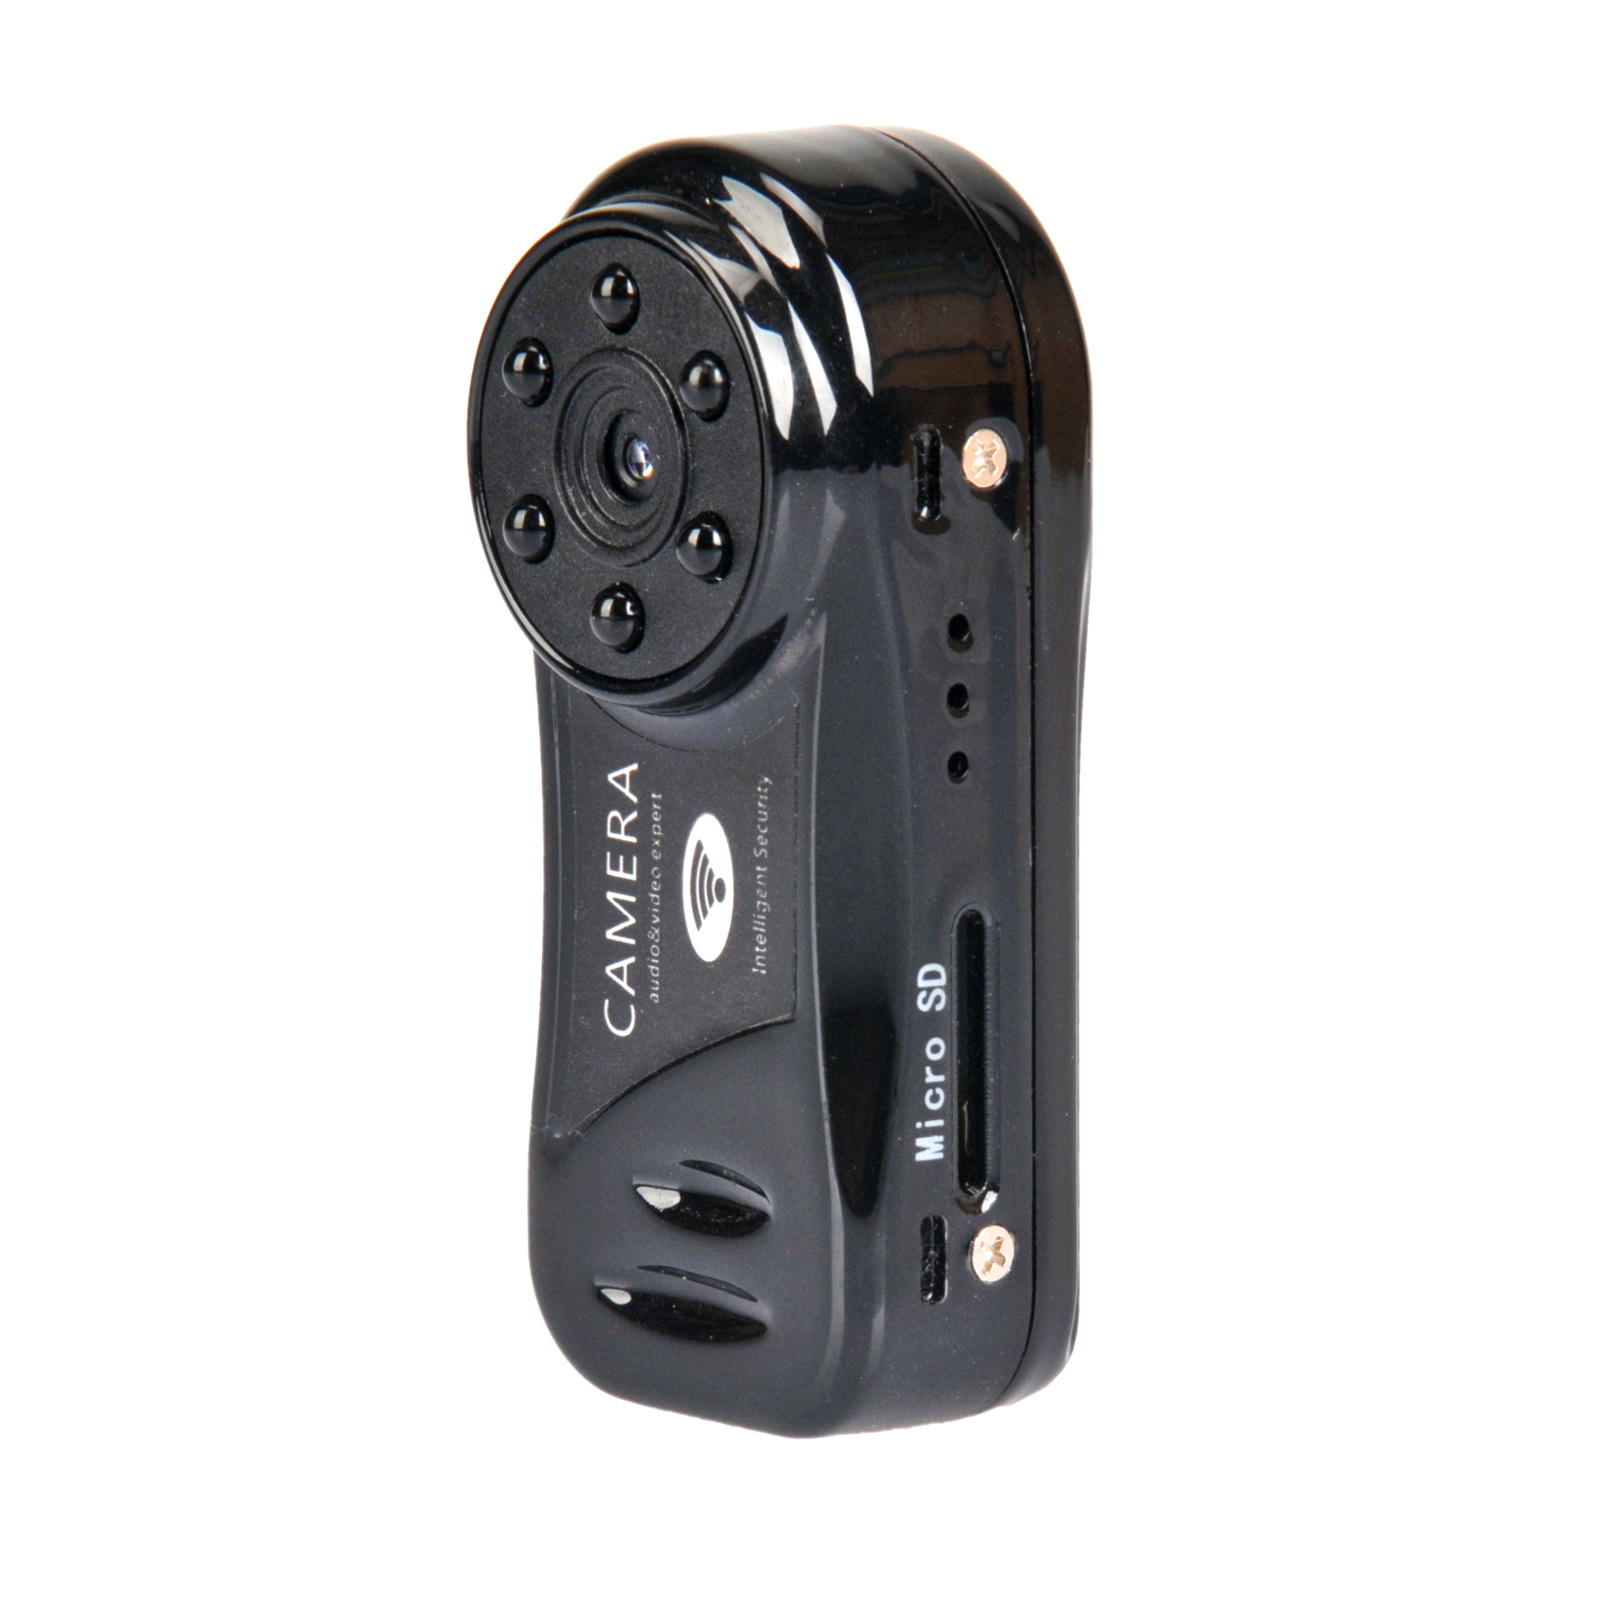 

XANES MD81S-6 Инфракрасное ночное видение Мини WiFi Сеть камера DV 480P Видеорегистратор Беспроводной IP камера Loop Video Recorder